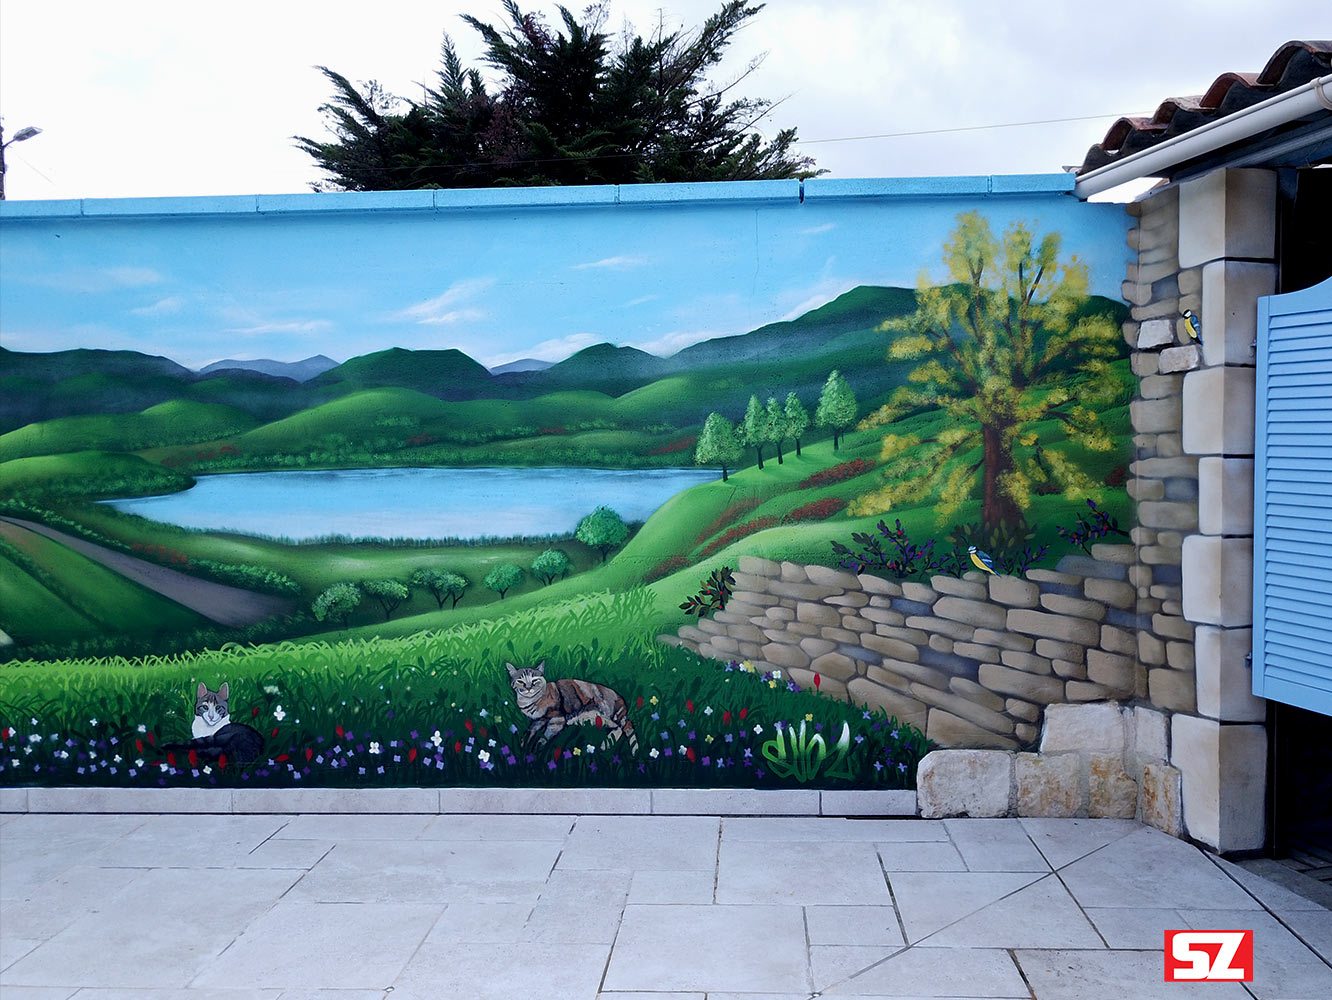 Graffiti-peinture-Suoz-decoration-chat-oiseaux-nature-paysage-Saintes-Customsz-la-rochelle-france-street-art-mur-deco